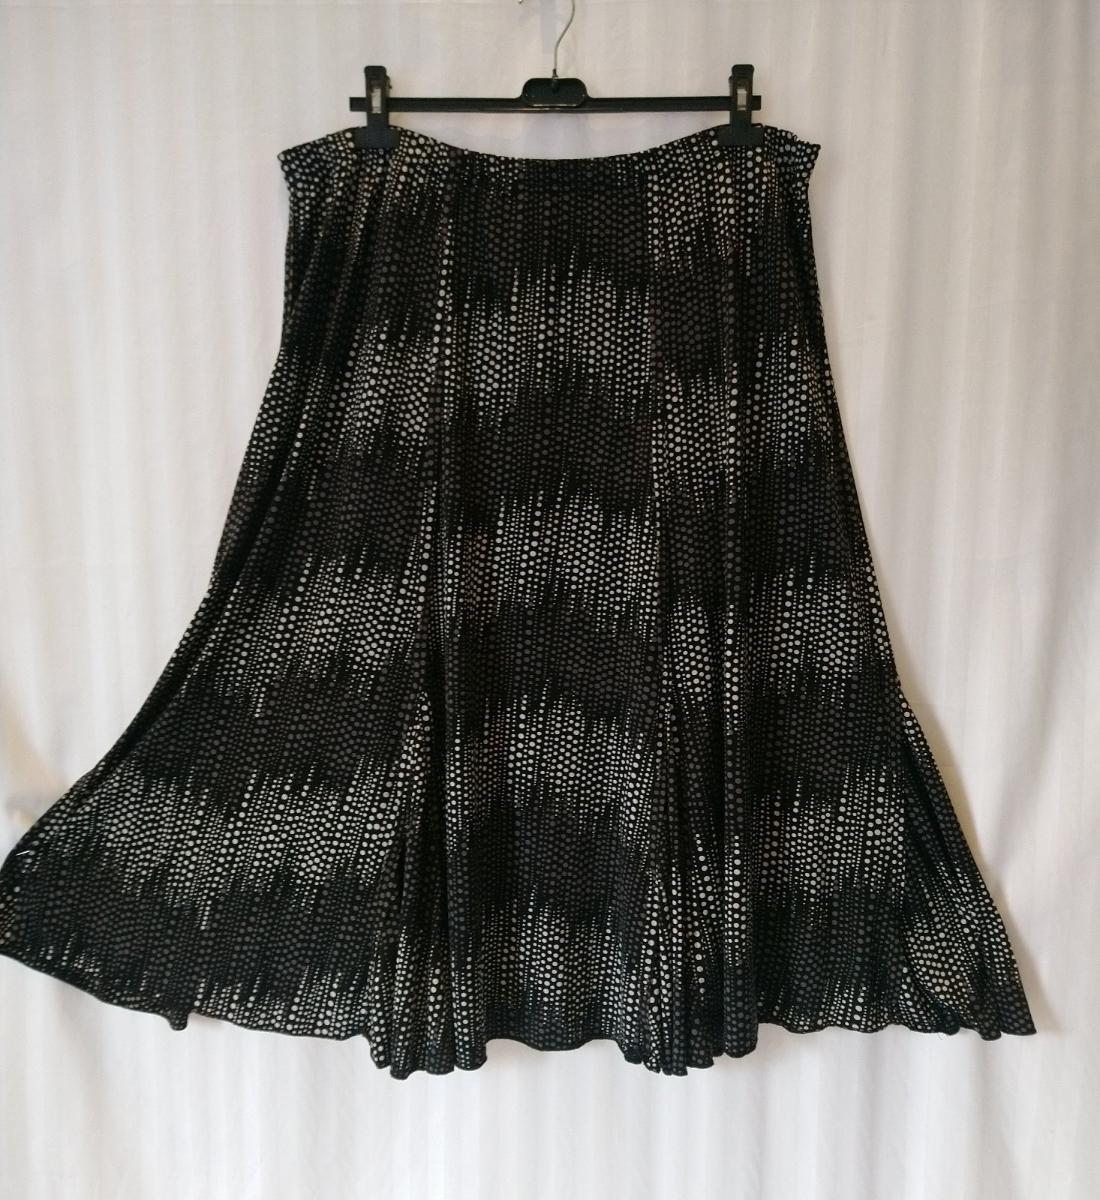 Elastická čierno sivo biela sukňa s bodkami, Elvi, XXXL - Dámske oblečenie